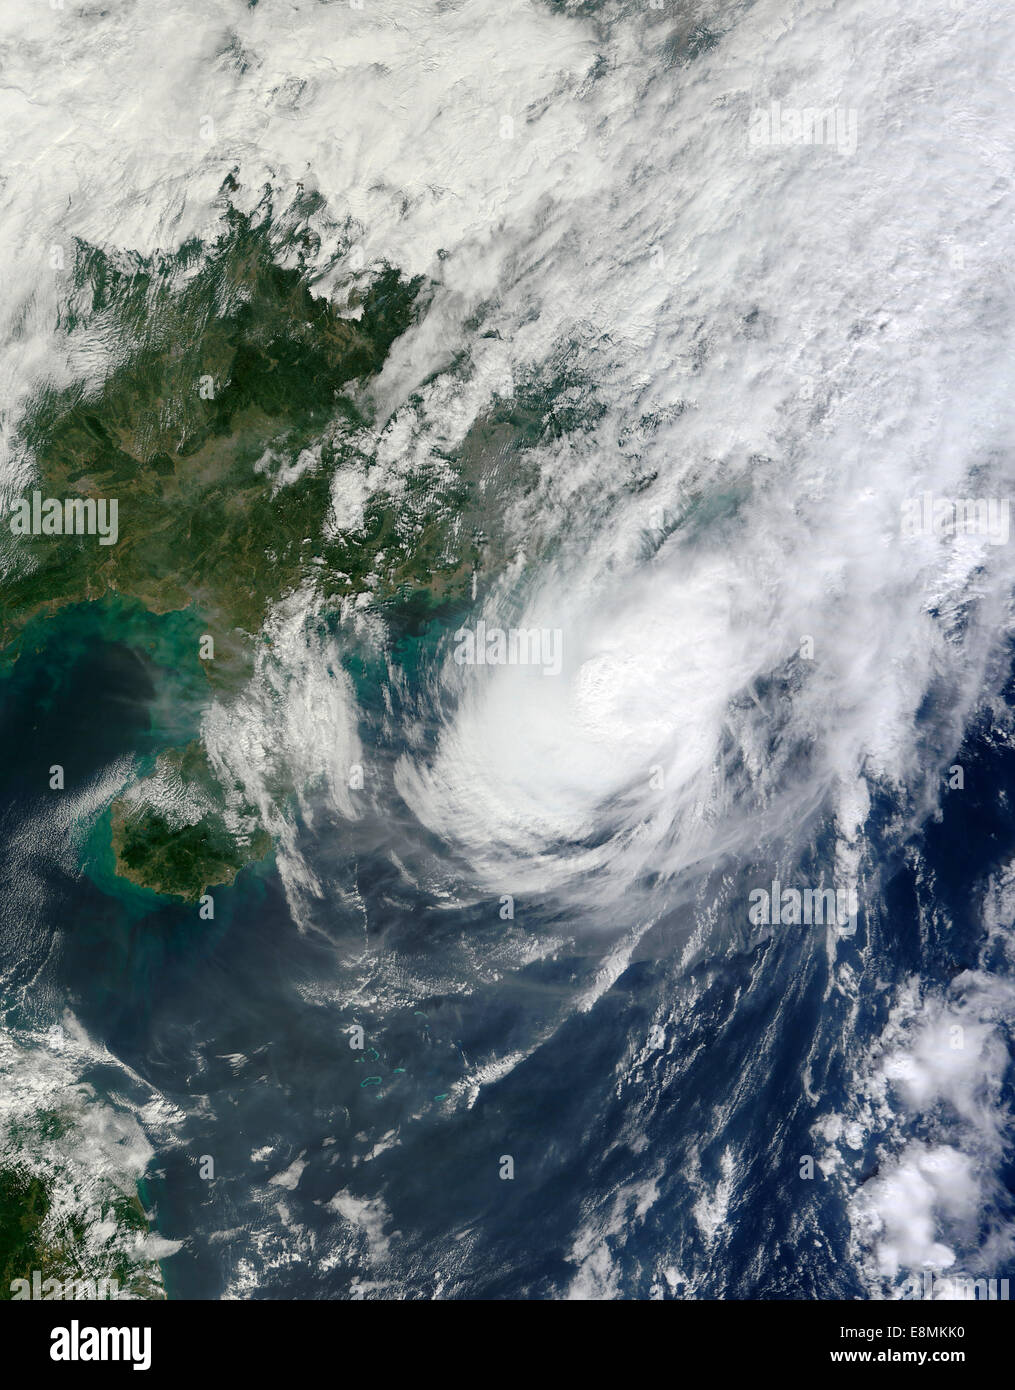 November 3, 2013 - Typhoon Krosa in the South China Sea. Stock Photo